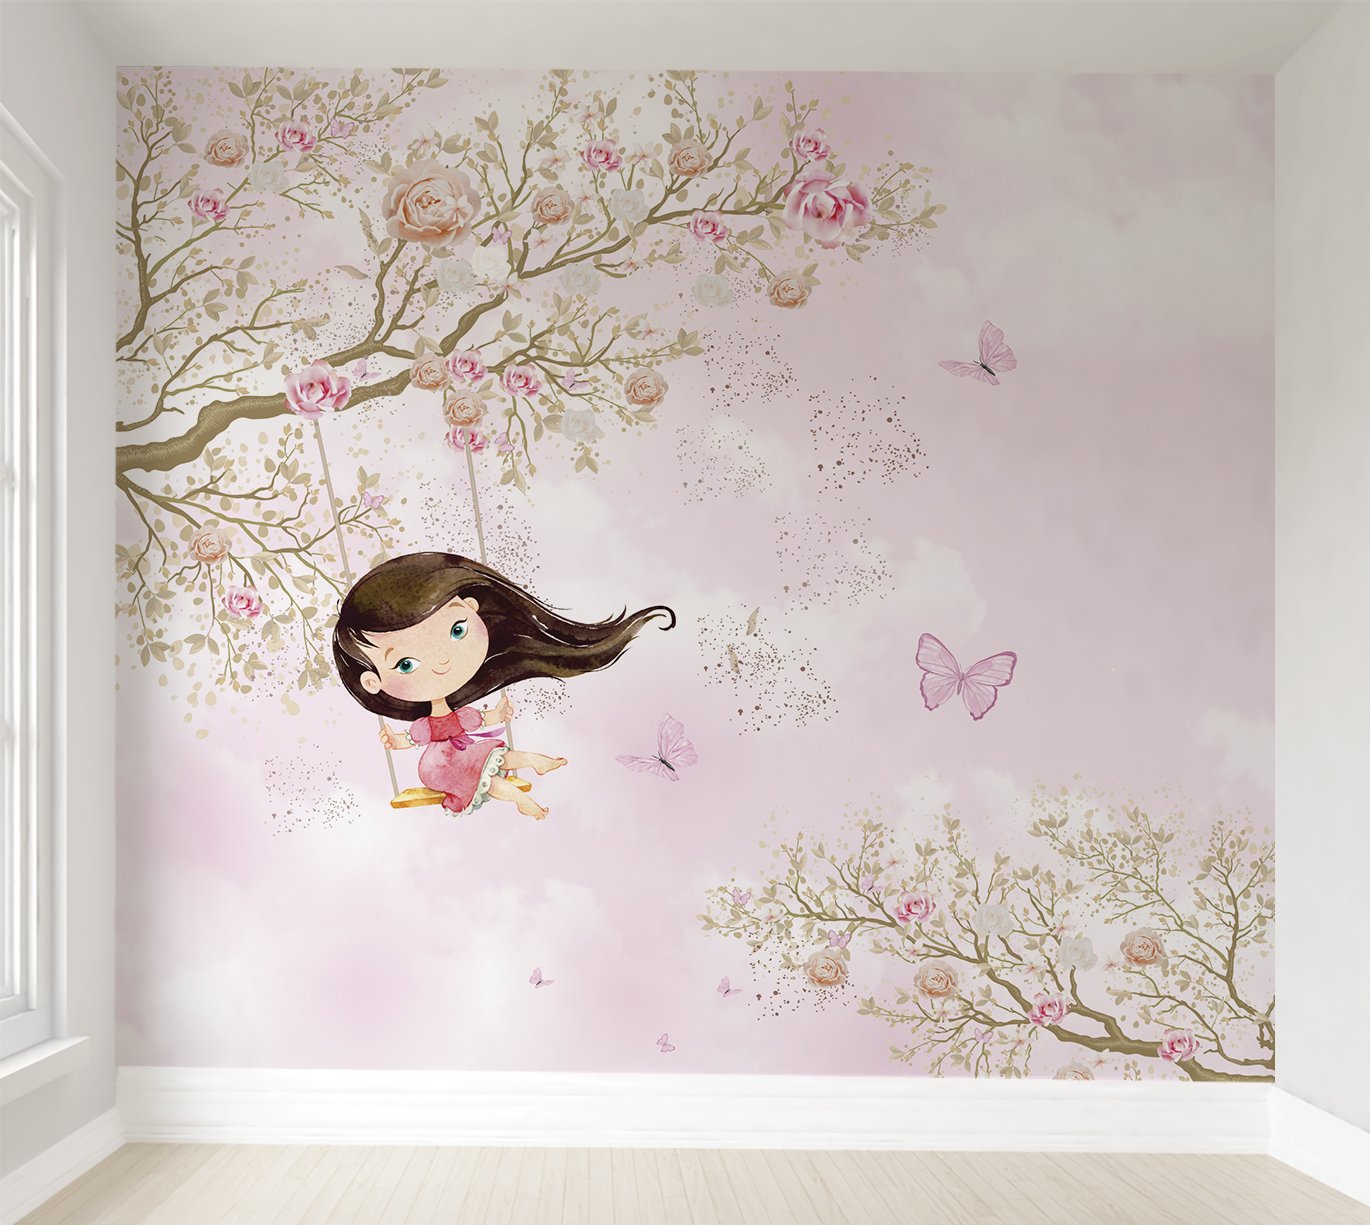 Papel de parede menina no balanço infantil rosa para quarto de bebê M² PP76 - 1